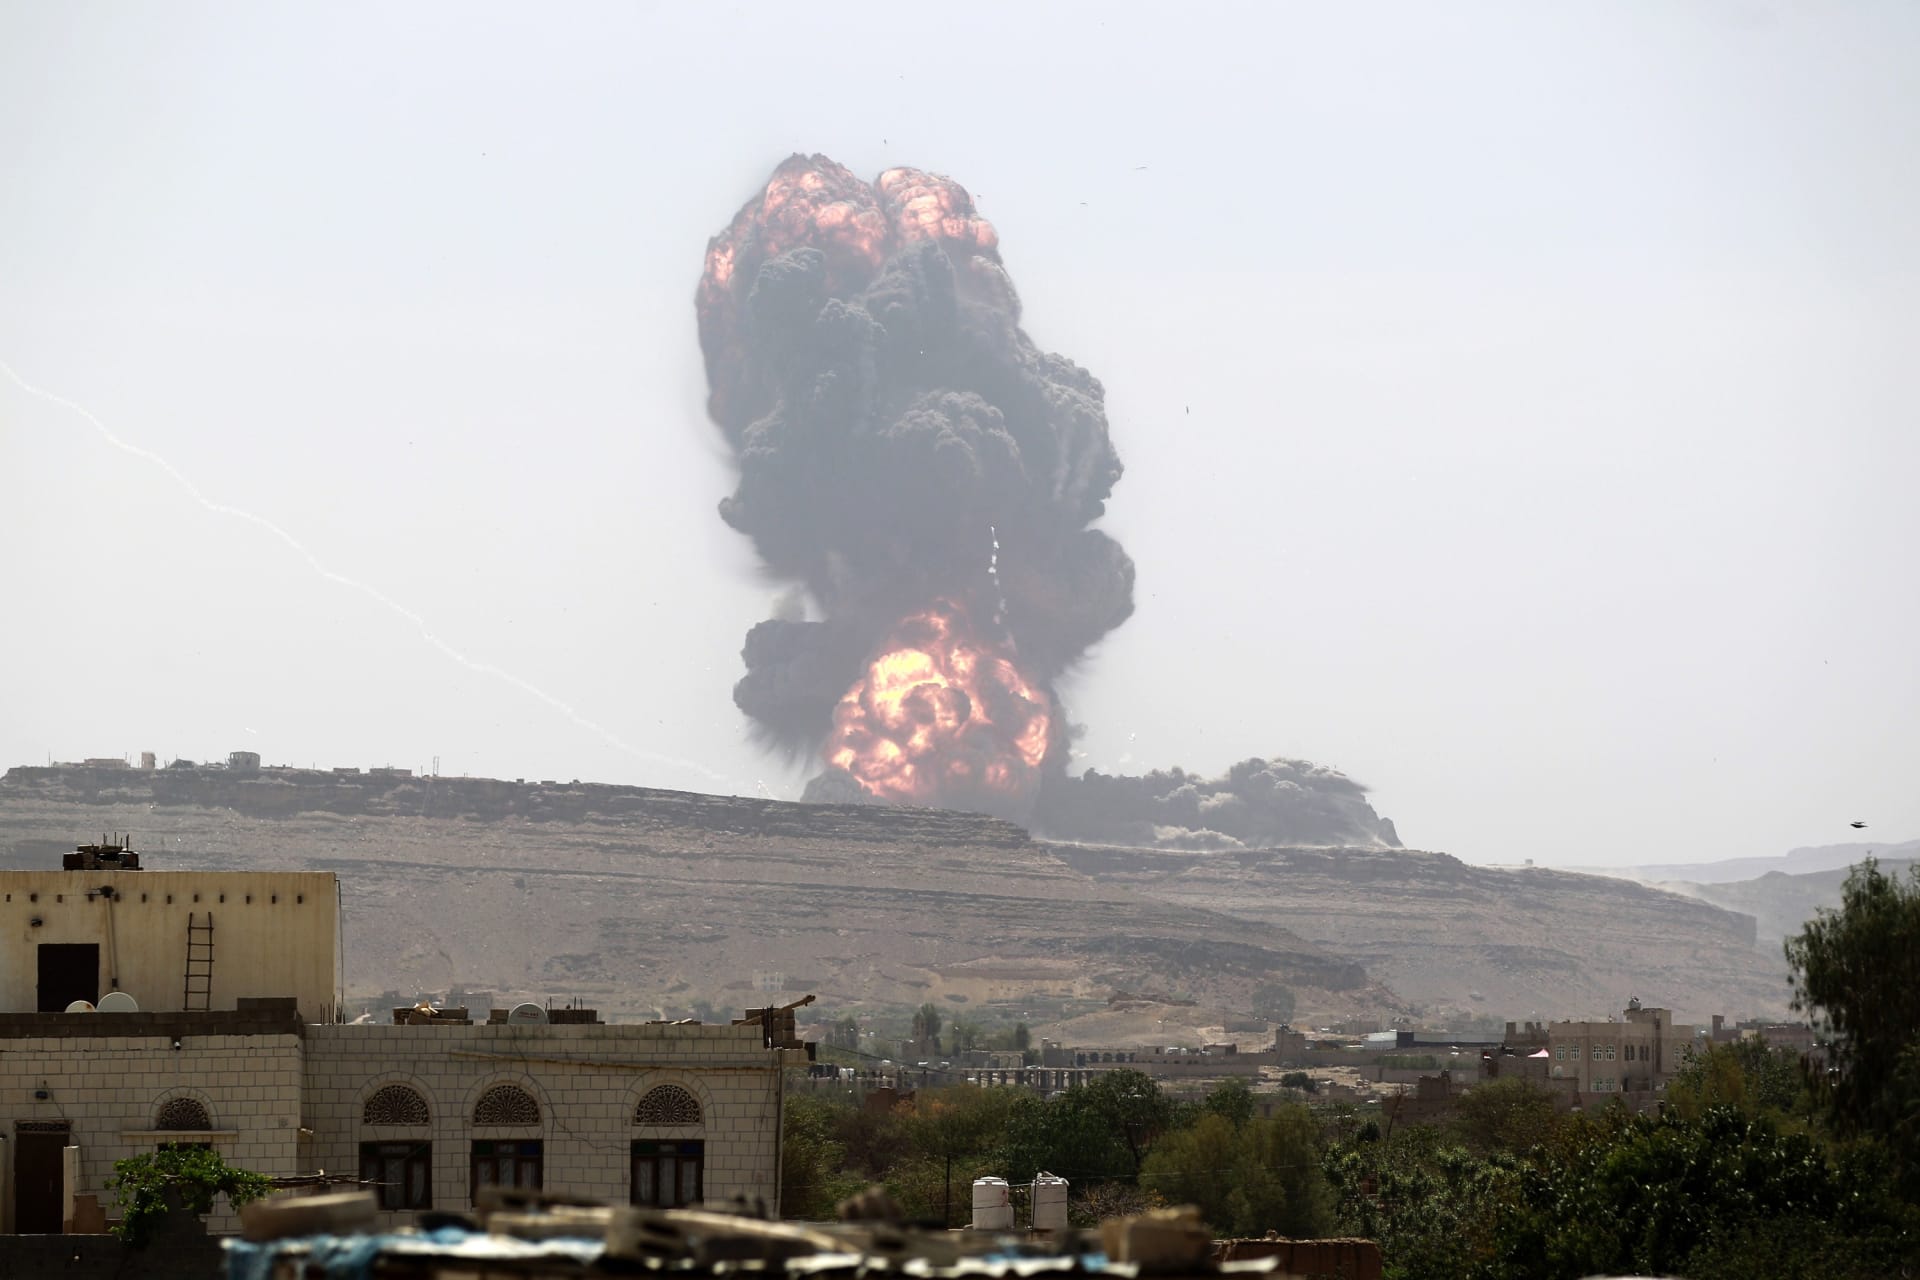 التحالف يواصل ضرباته الجوية للحوثيين في صنعاء ويدمر منظومة اتصال للطائرات المسيرة